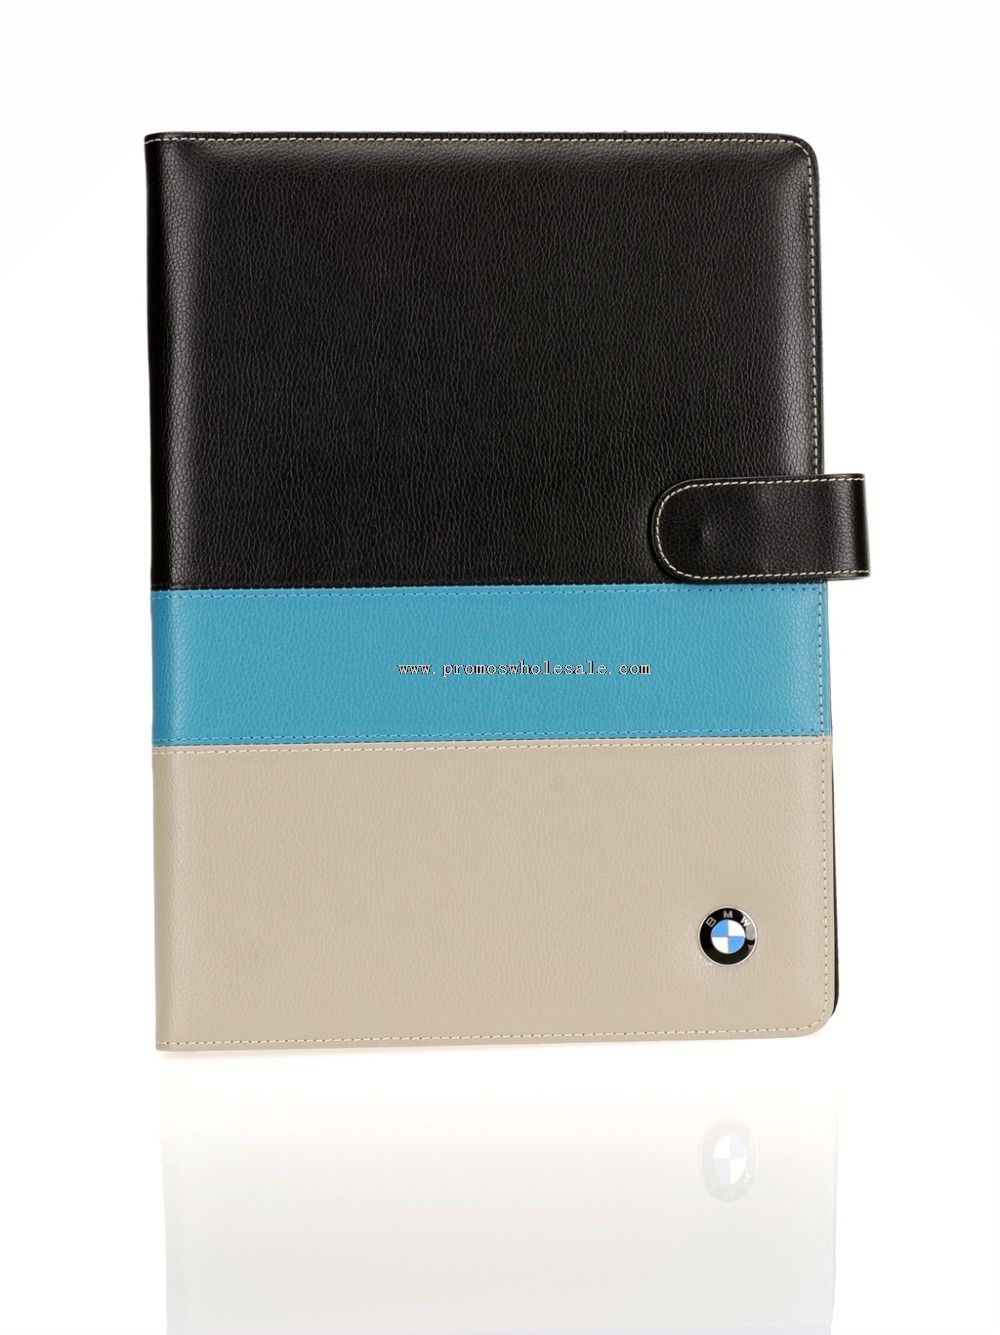 Etui de cuir portefeuille dossier comprimé avec notepad